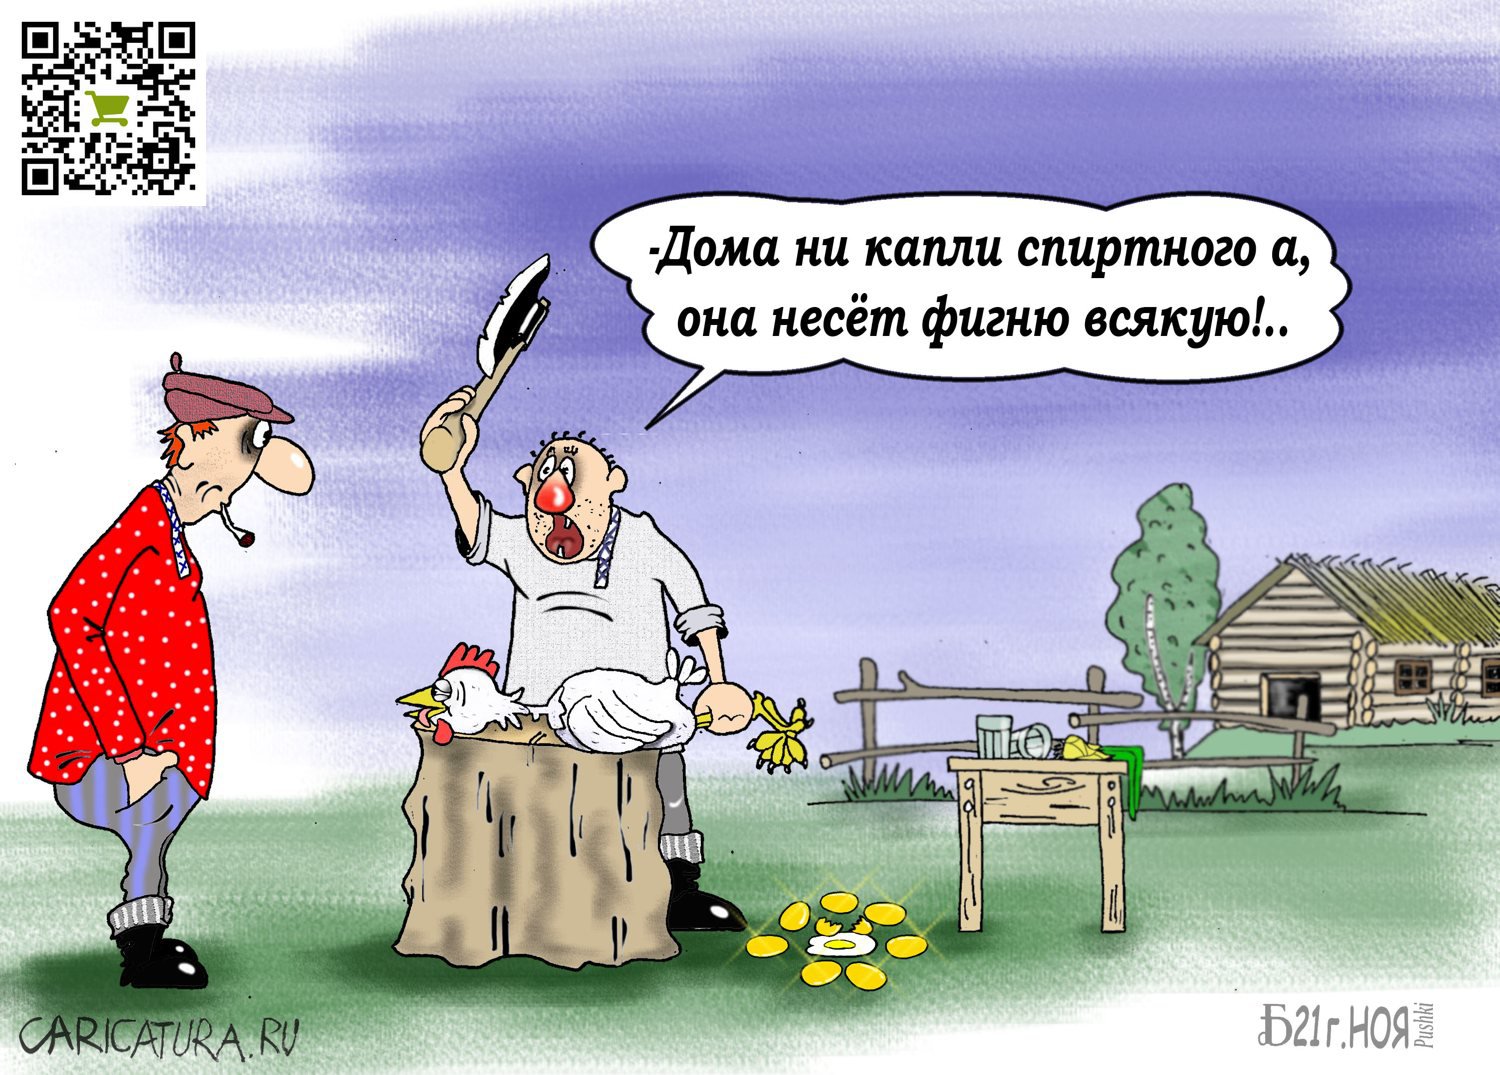 Карикатура "Про фигню всякую", Борис Демин